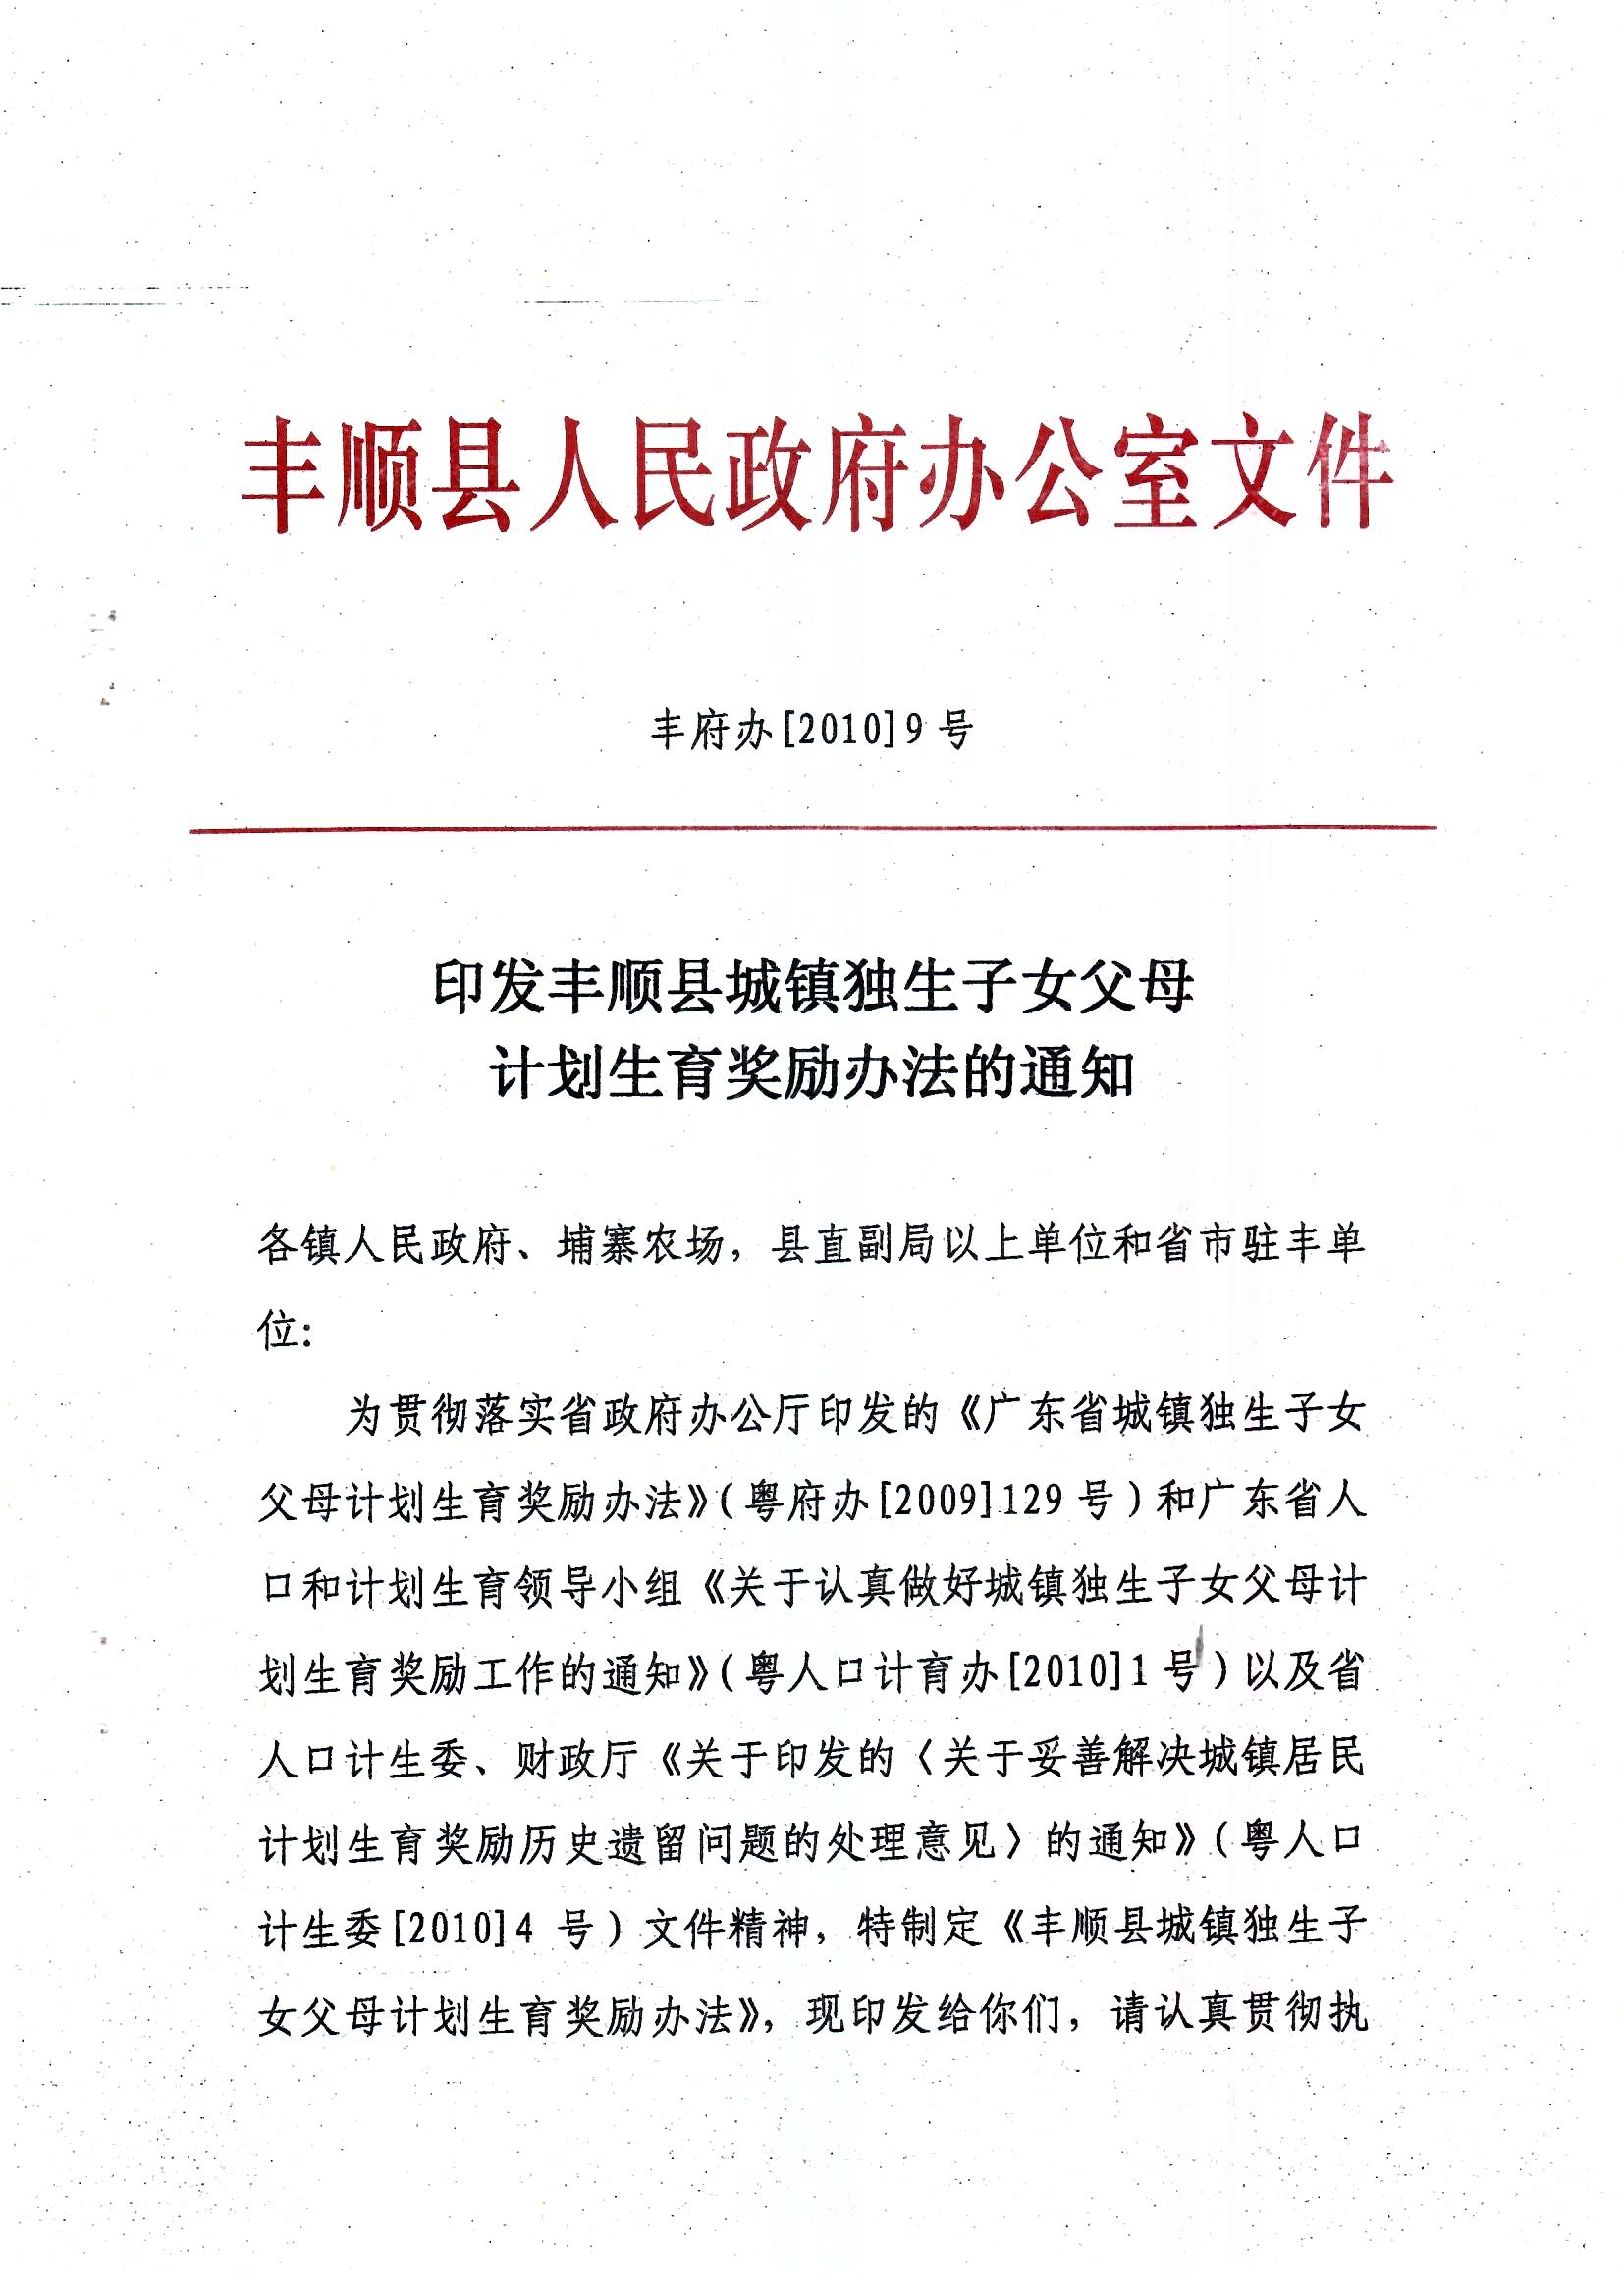 印发丰顺县城镇独生子女父母计划生育奖励办法的通知_页面_1.jpg